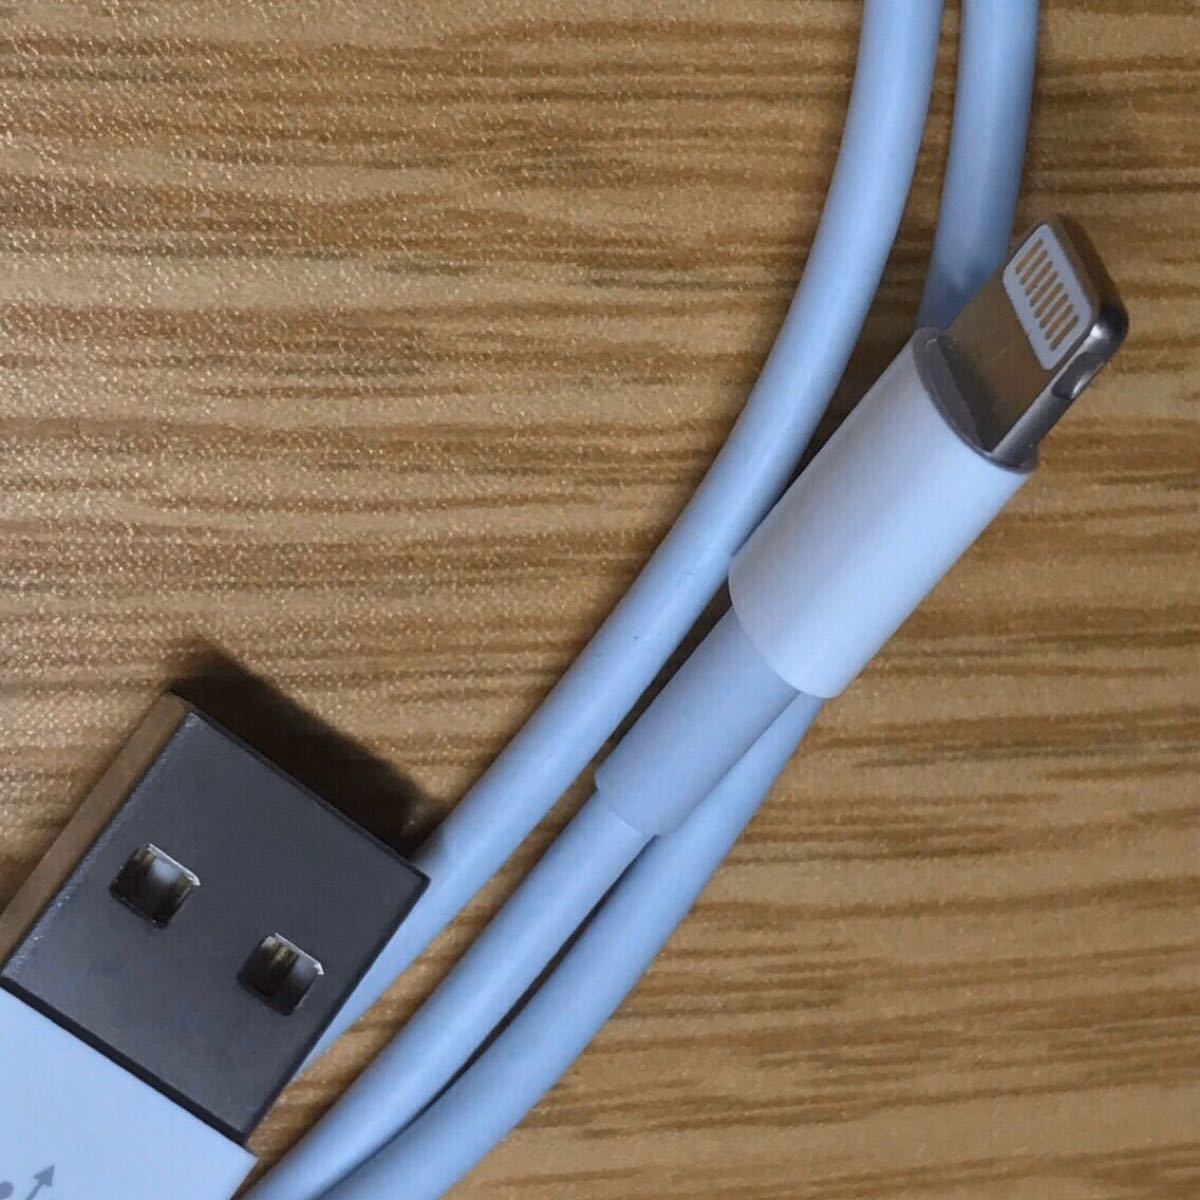 iPhone 充電器 充電ケーブル コード lightning cable ライトニングケーブル アダプタ USB コンセント